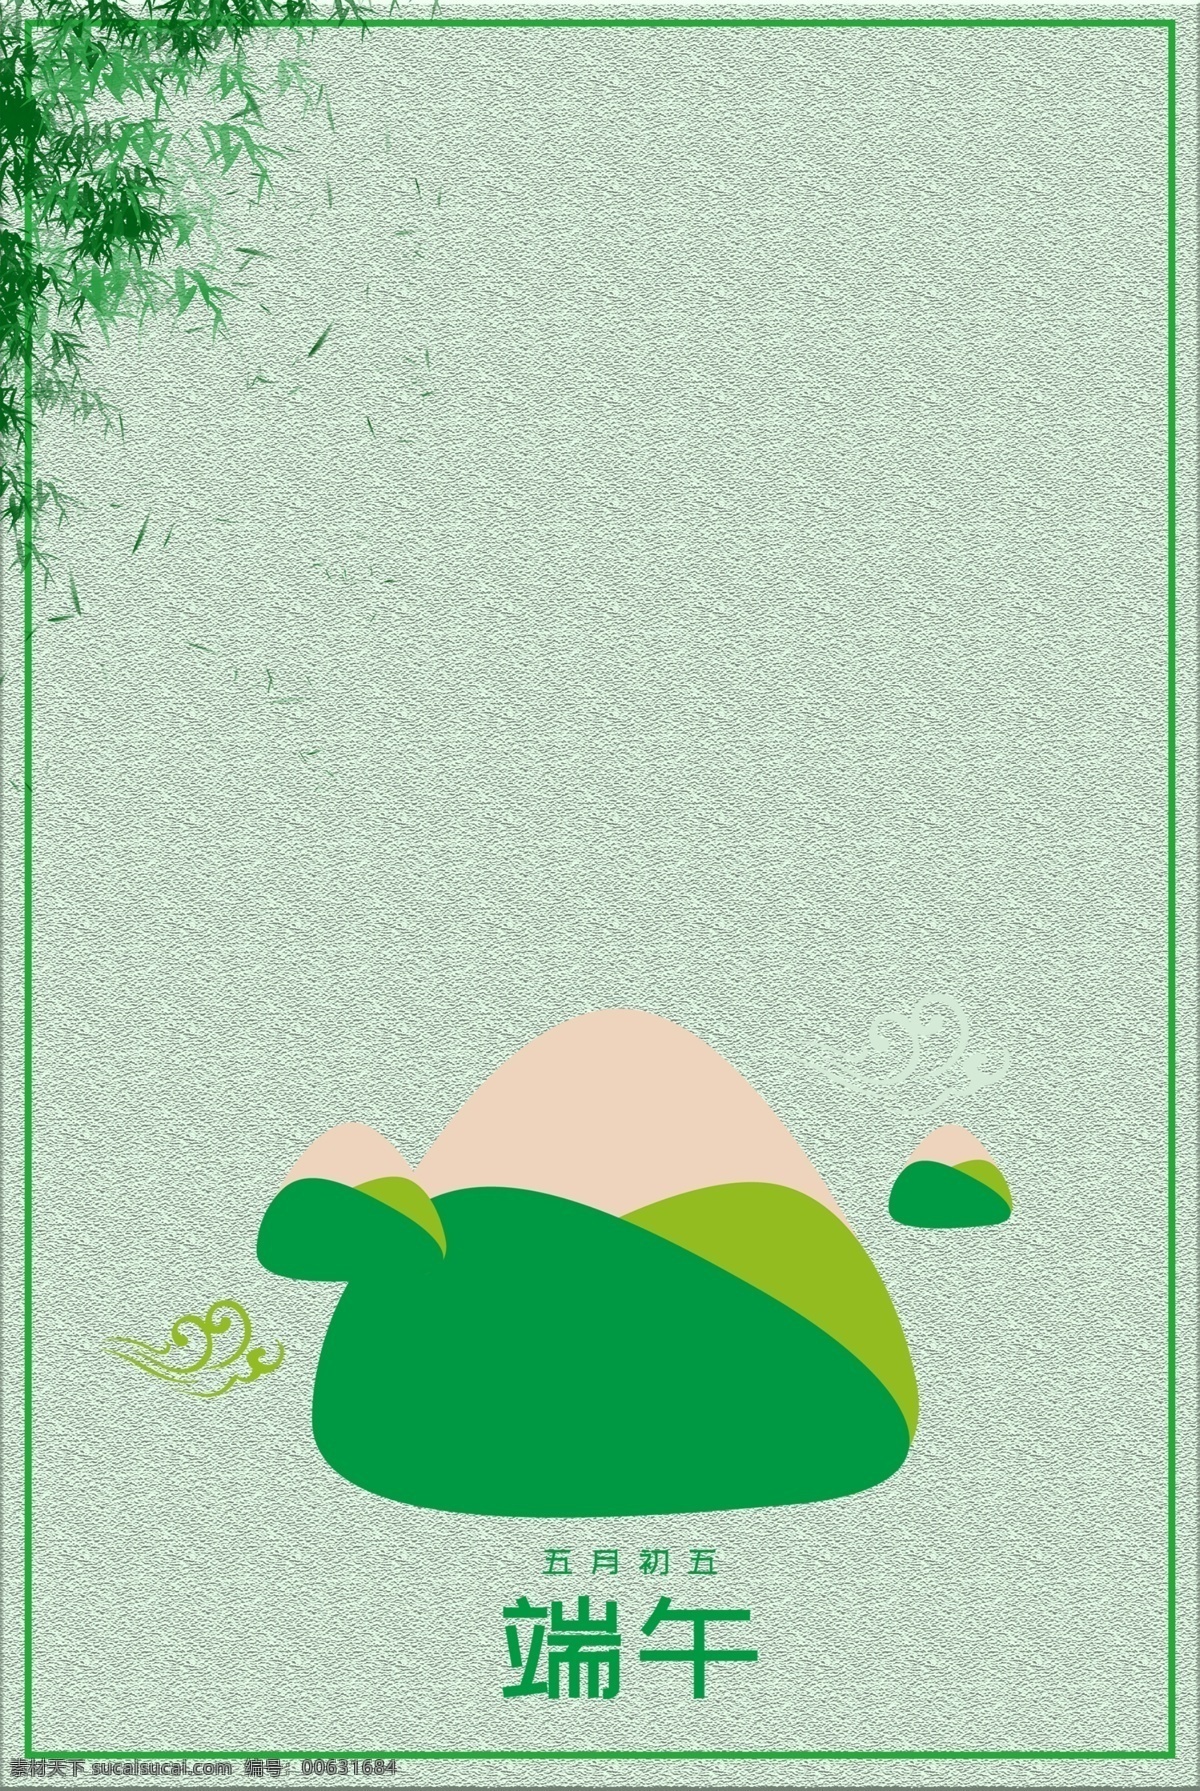 五月 初五 端午 吃 粽子 水彩 包粽子 插画 绿色 广告 背景 绿色背景 绿色清新 传统节日